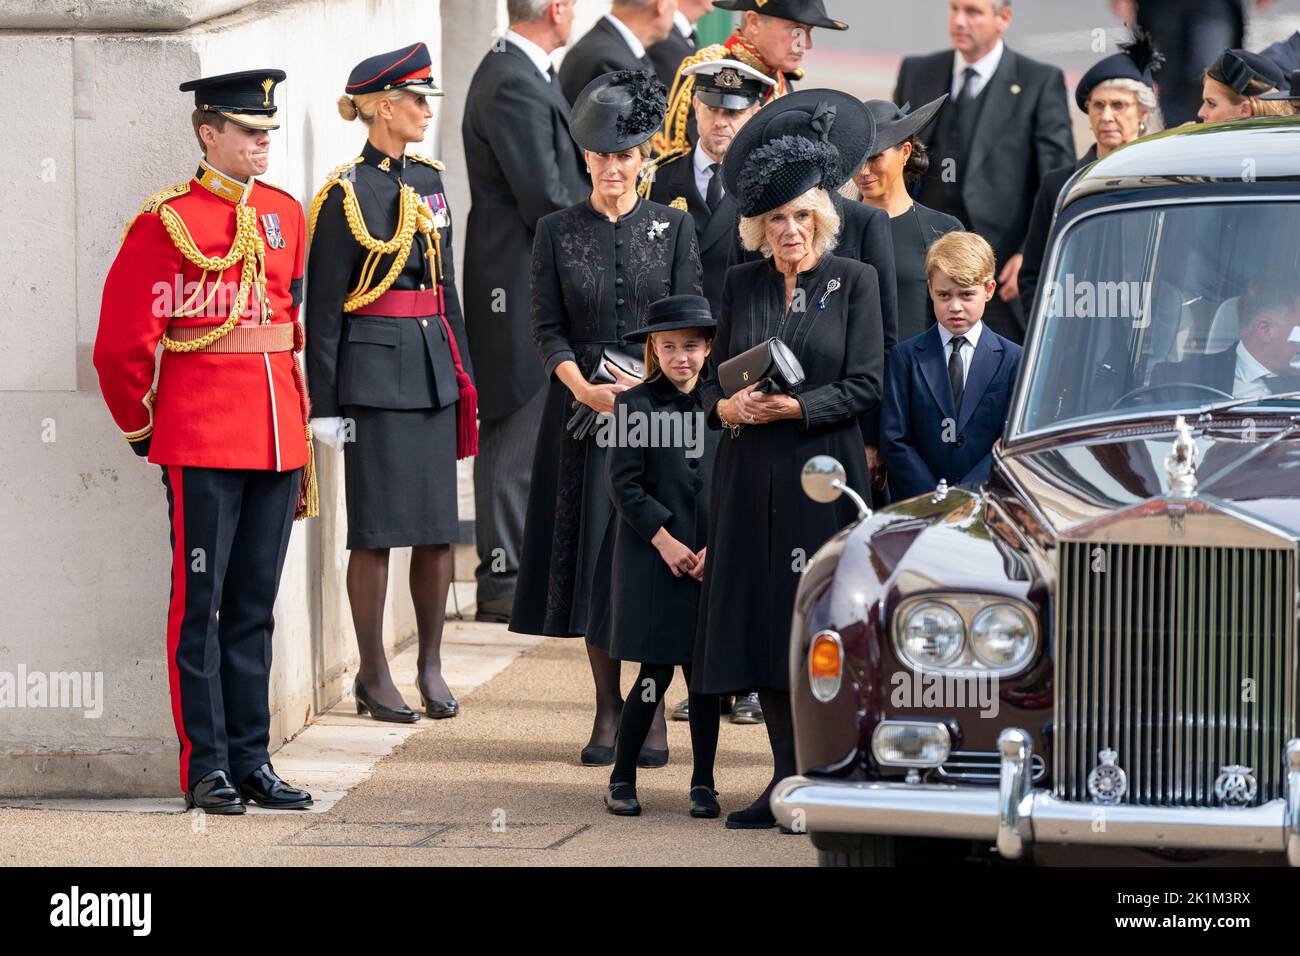 La contessa di Wessex, la principessa Charlotte, la regina Consort e il principe George come la carrozza di pistola di Stato che trasporta la bara della regina Elisabetta II arriva a Wellington Arch durante la processione cerimoniale dopo il suo funerale di Stato all'Abbazia di Westminster, Londra. Foto Stock